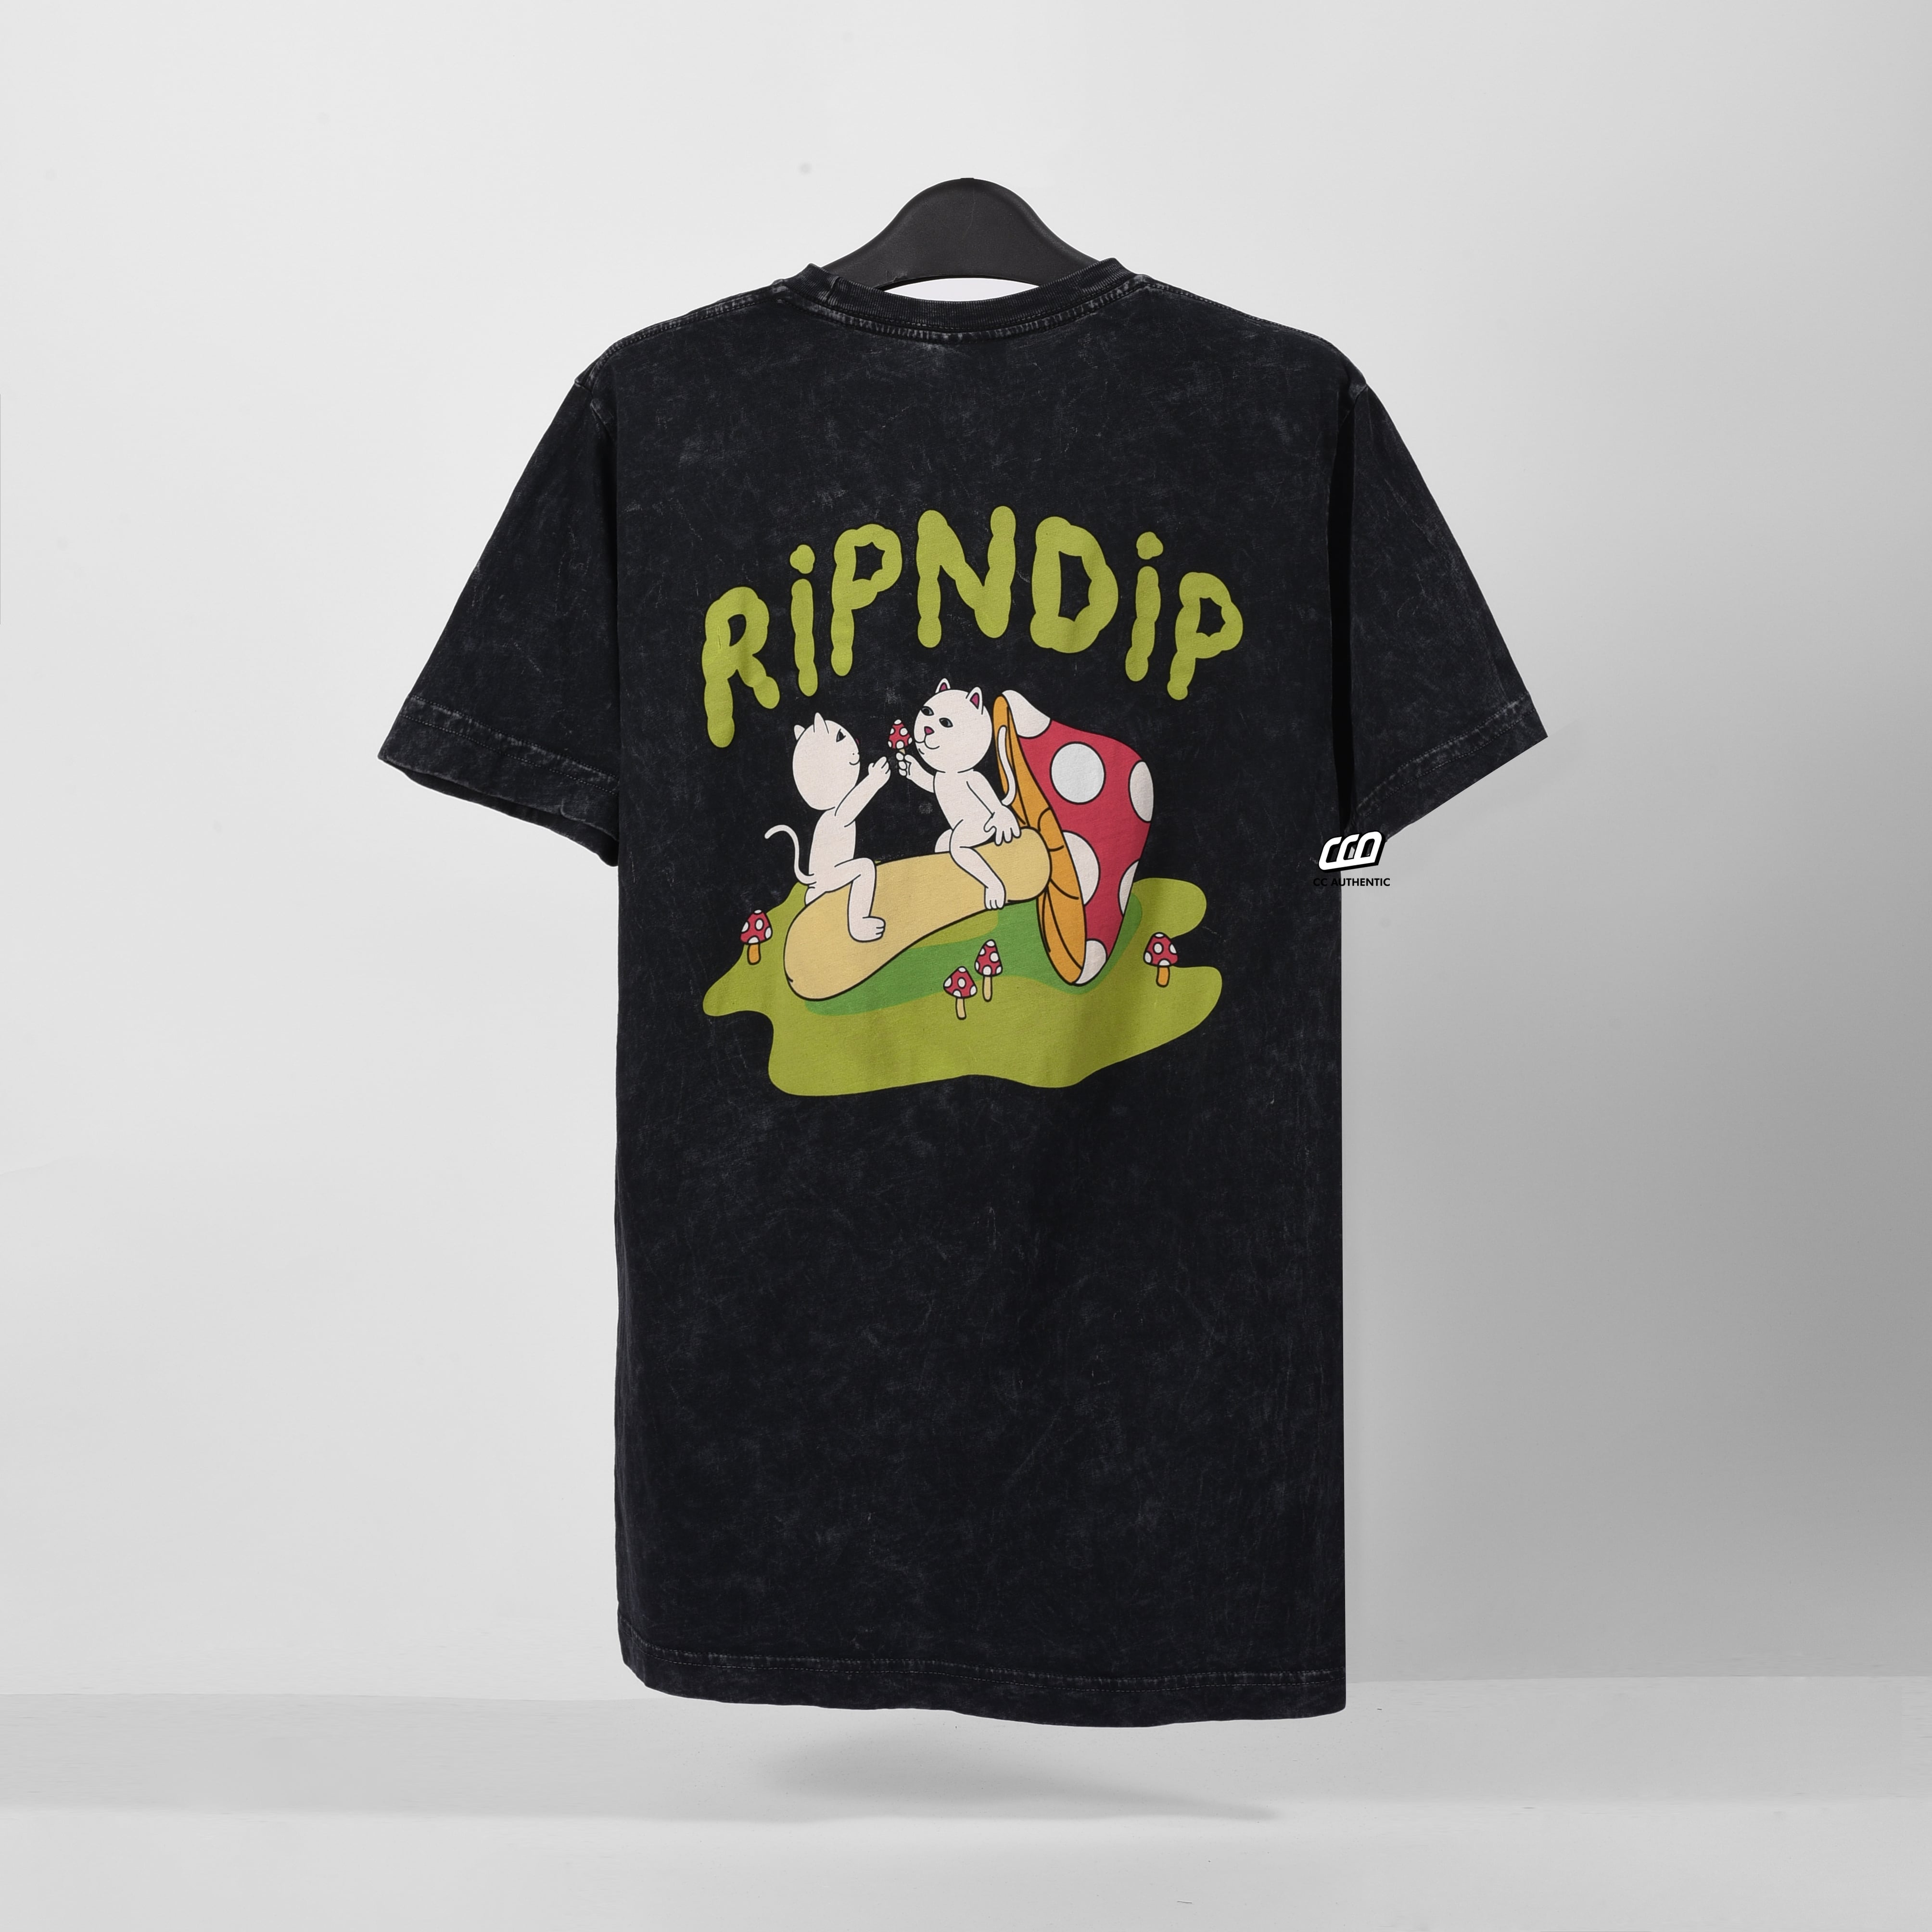 RIPNDIP, sharing is caring wash t-shirt